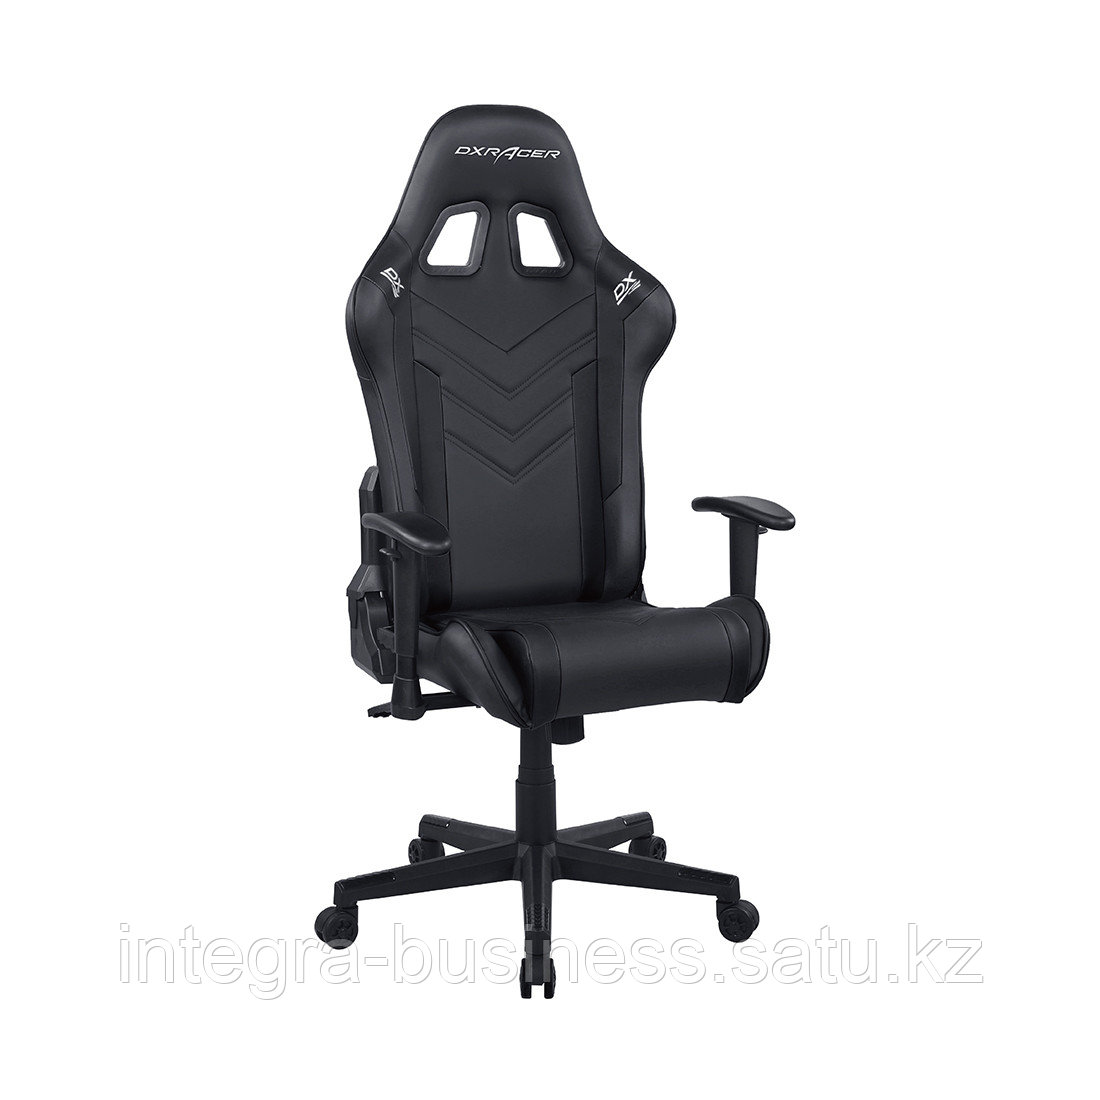 Игровое компьютерное кресло DX Racer GC/P132/N, фото 1